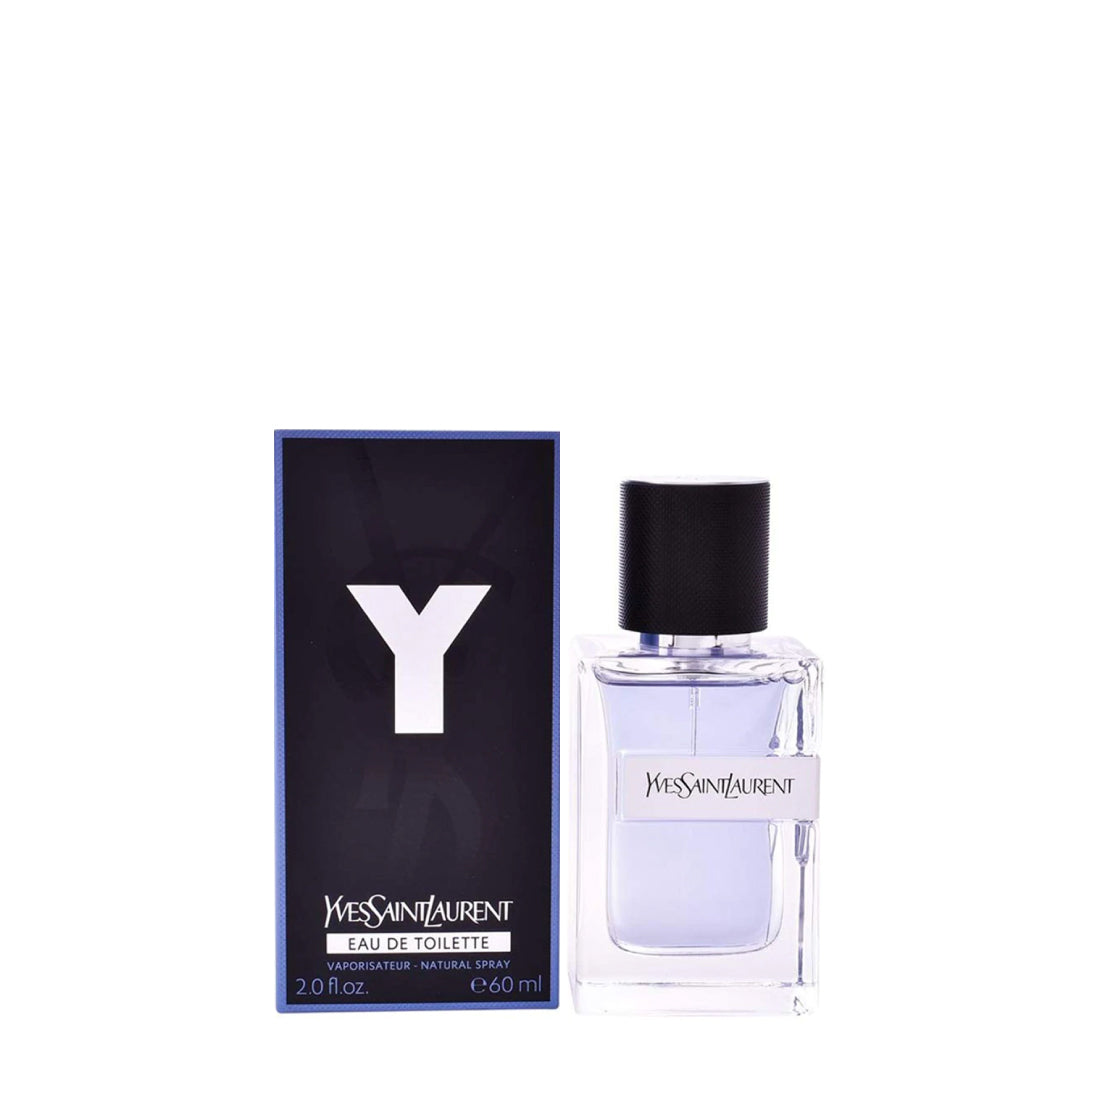 Y Men by Ysl Yves Saint Laurent Eau de Toilette Spray 6.7 oz